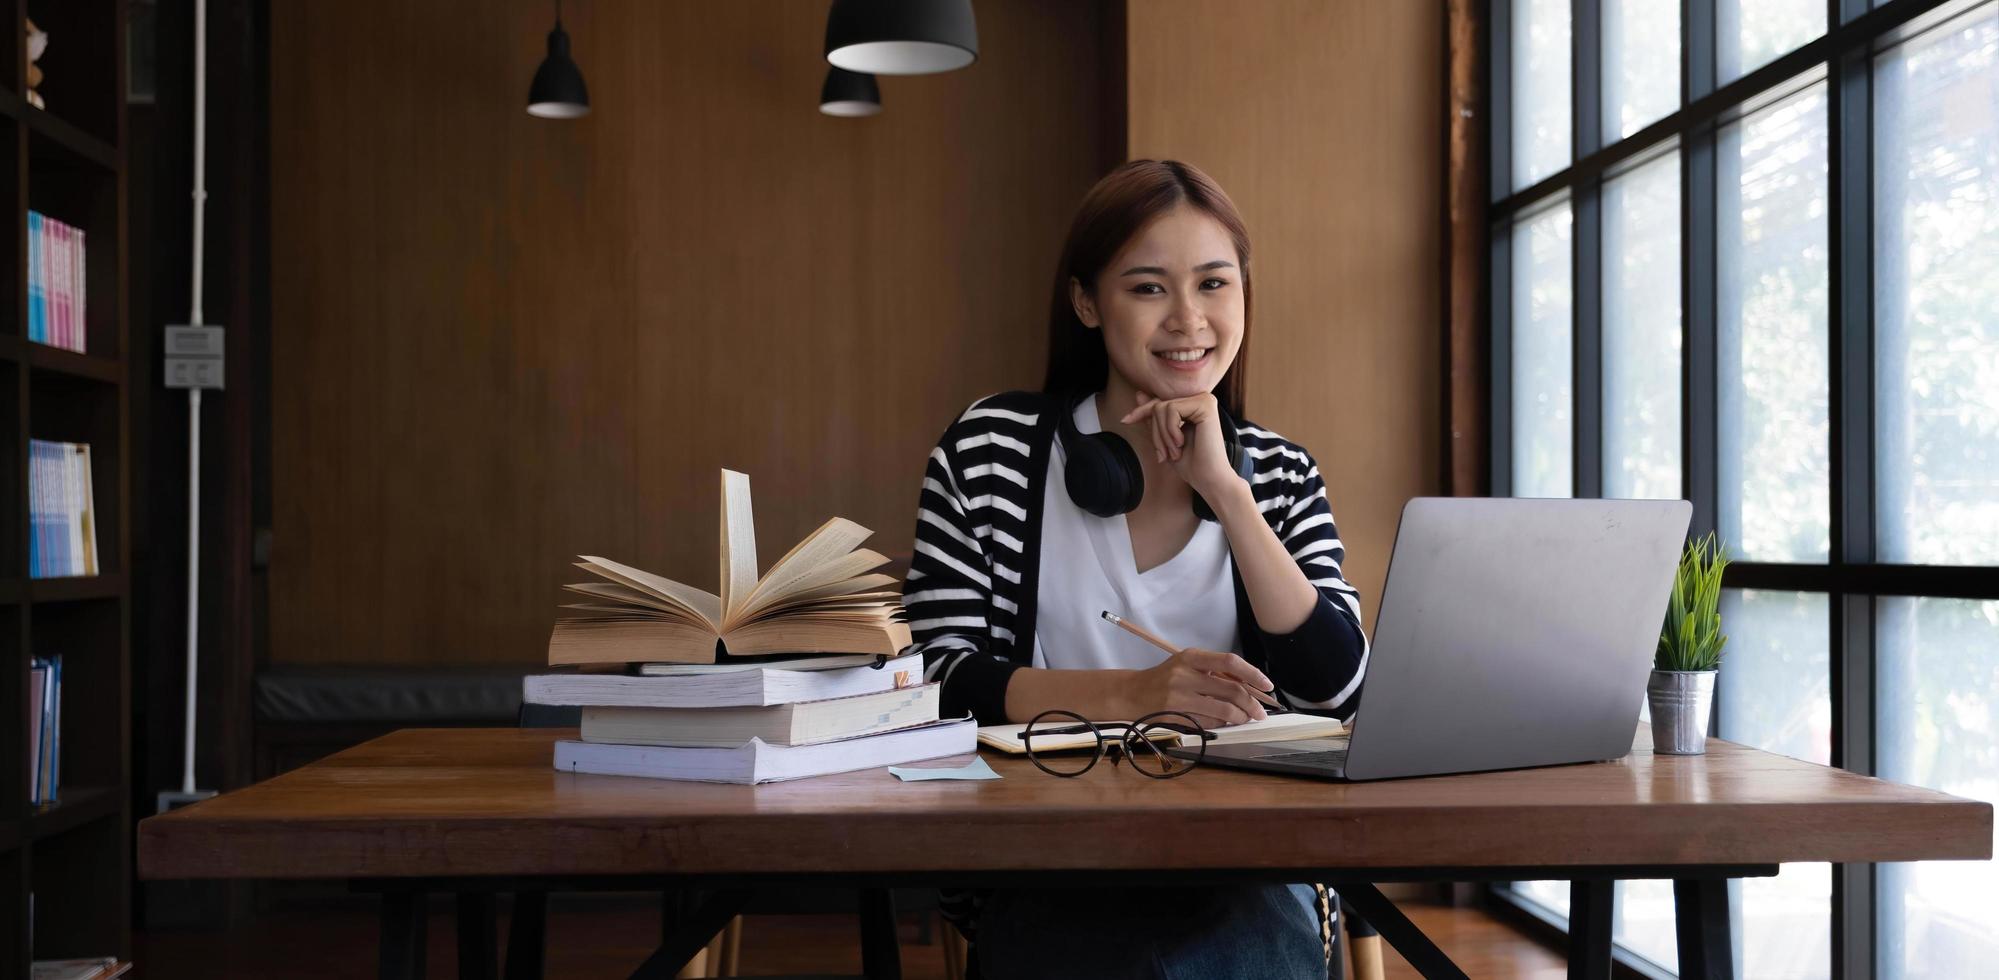 Schöne junge asiatische Studentin in der Bibliothek oder im Café, die ihre Hausaufgaben macht und einen Laptop benutzt. foto